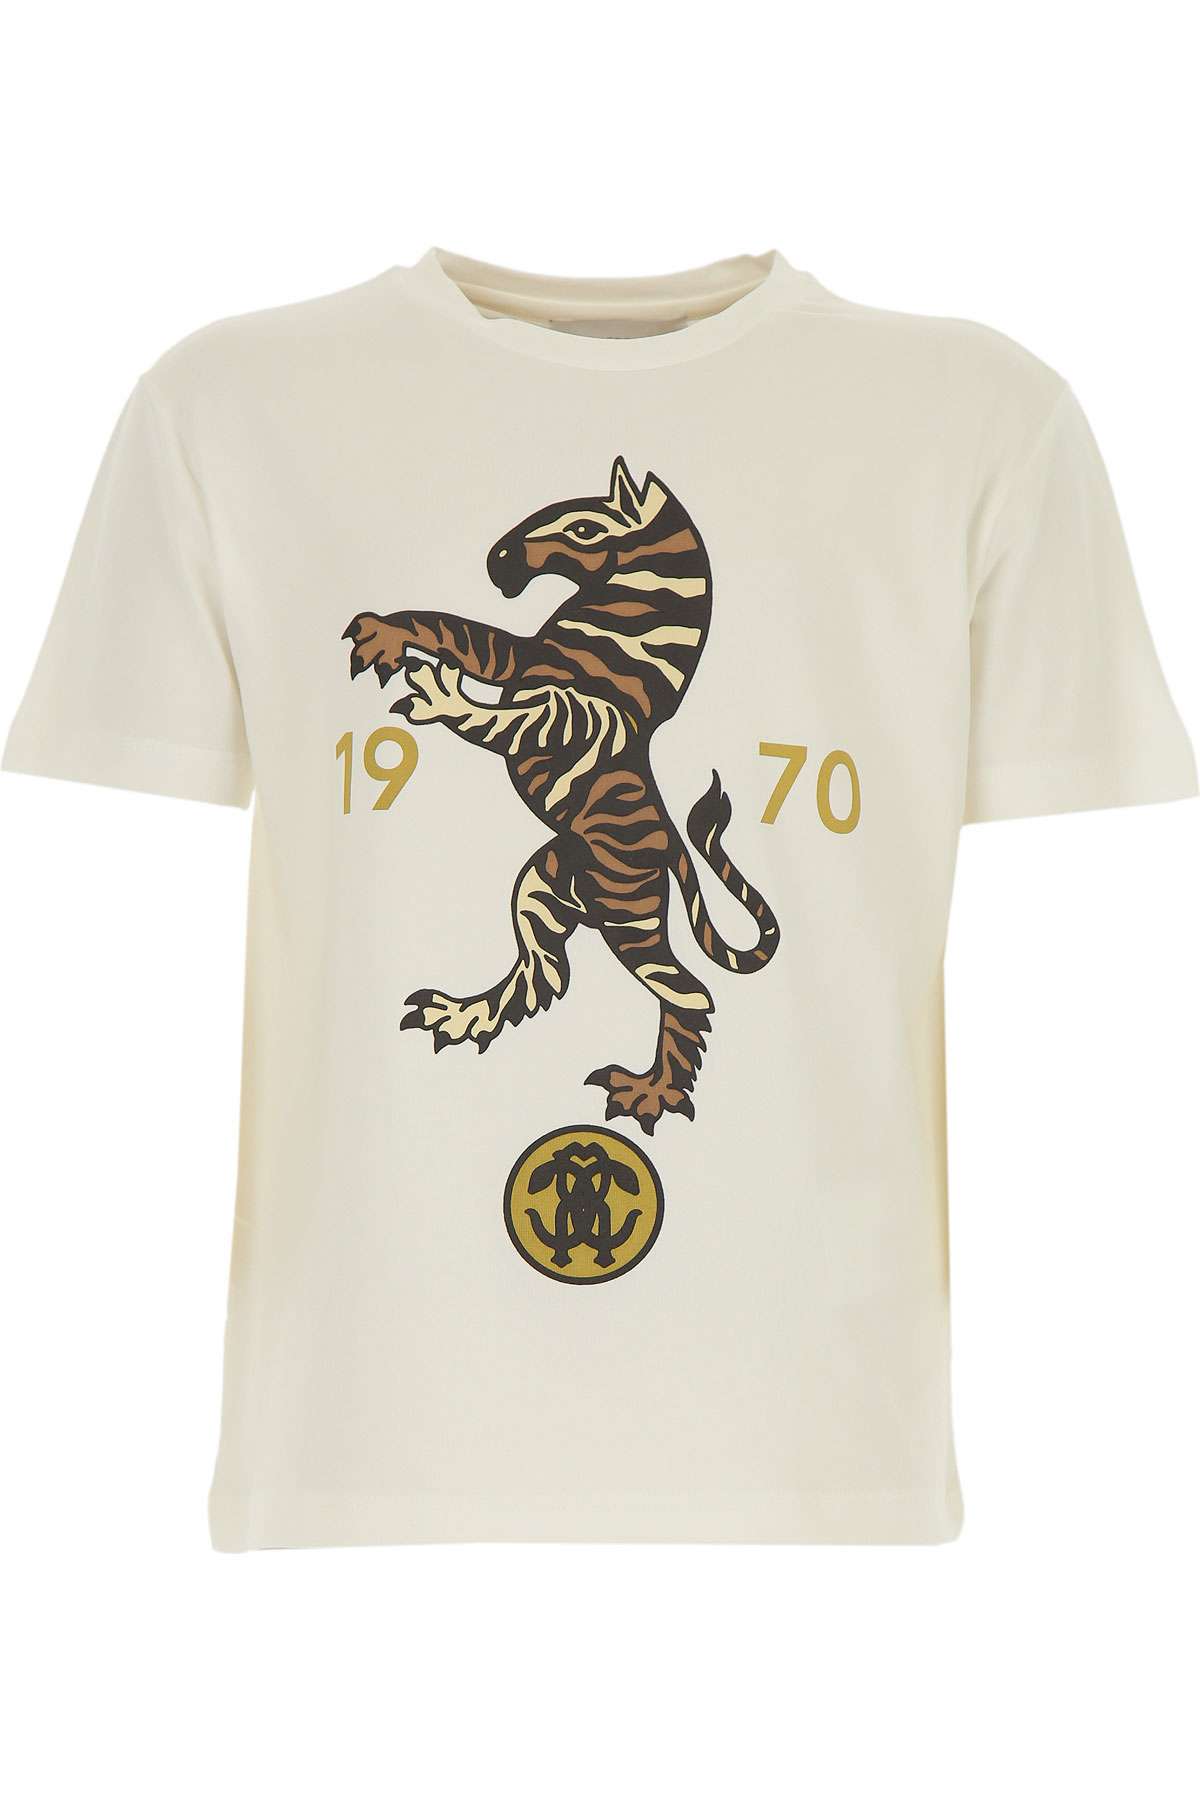 Roberto Cavalli Kinder T-Shirt für Jungen Günstig im Sale, Creme, Baumwolle, 2017, 4Y 6Y 8Y